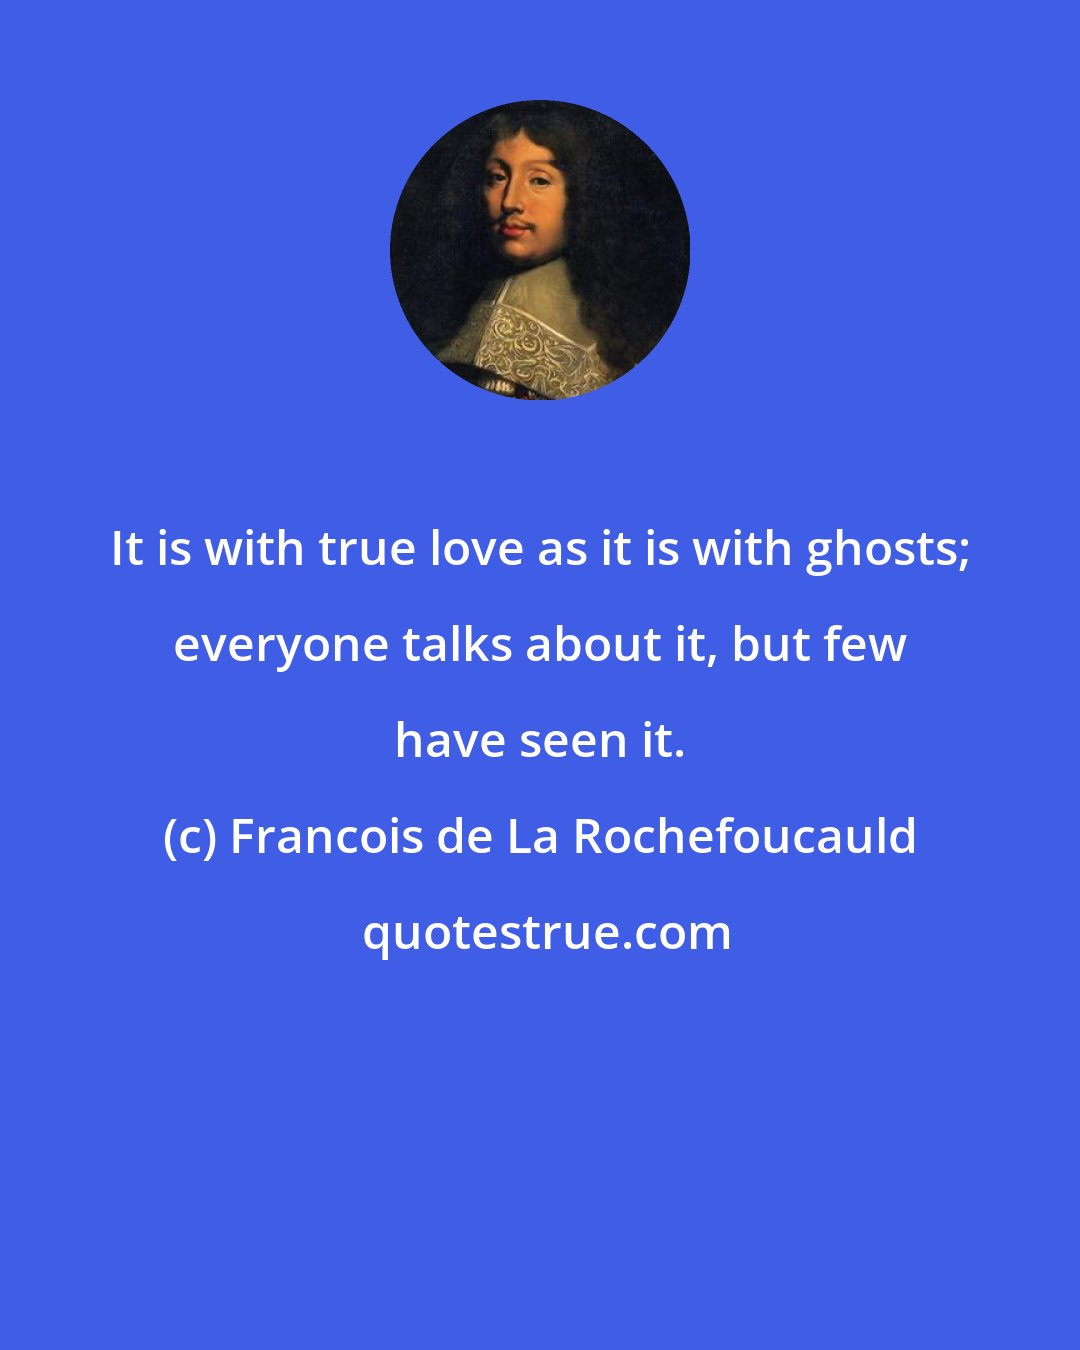 Francois de La Rochefoucauld: It is with true love as it is with ghosts; everyone talks about it, but few have seen it.